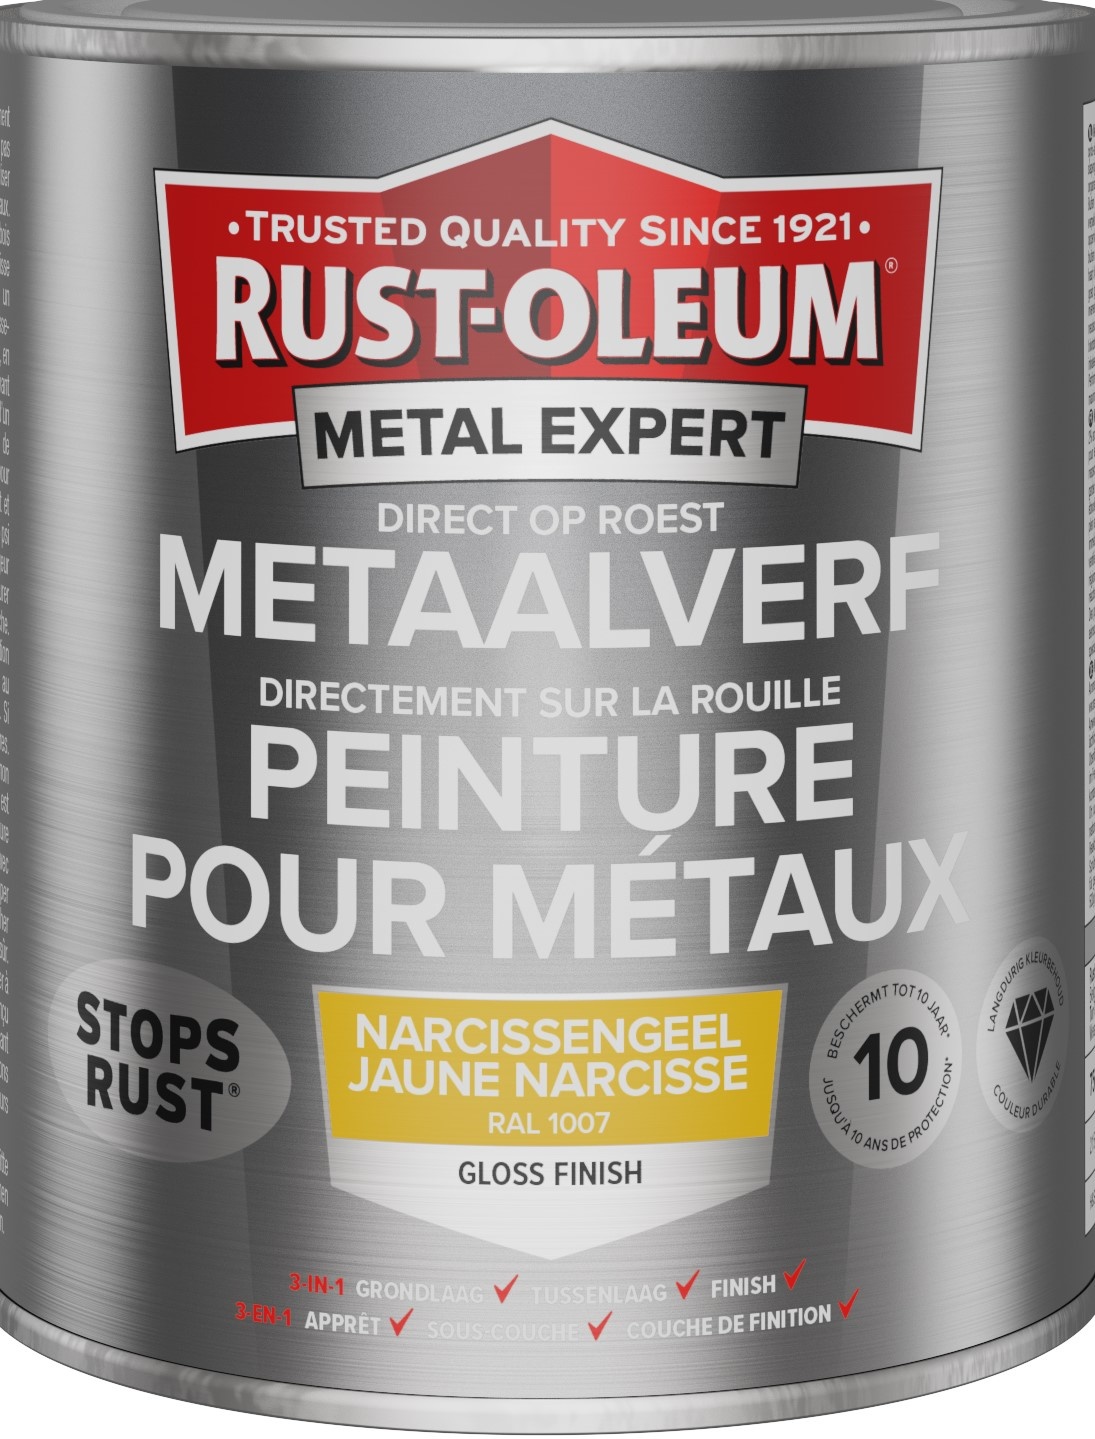 rust-oleum metal expert metaalverf gloss ral 1007 0.25 ltr